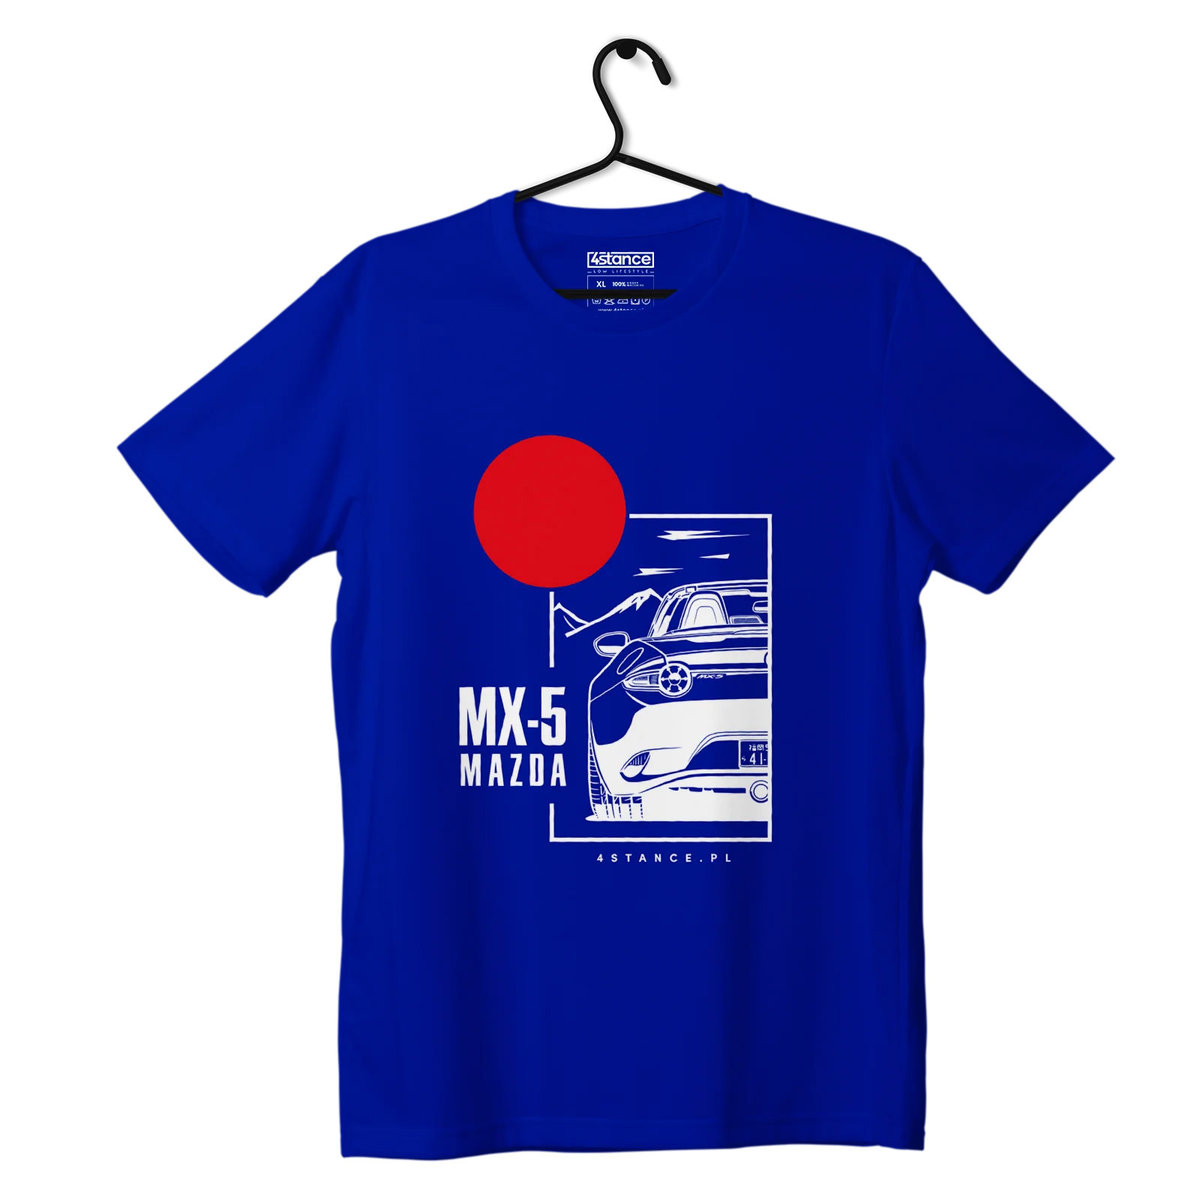 Zdjęcia - Odzież motocyklowa Mazda T-shirt koszulka  MX-5 niebieska-XXL 